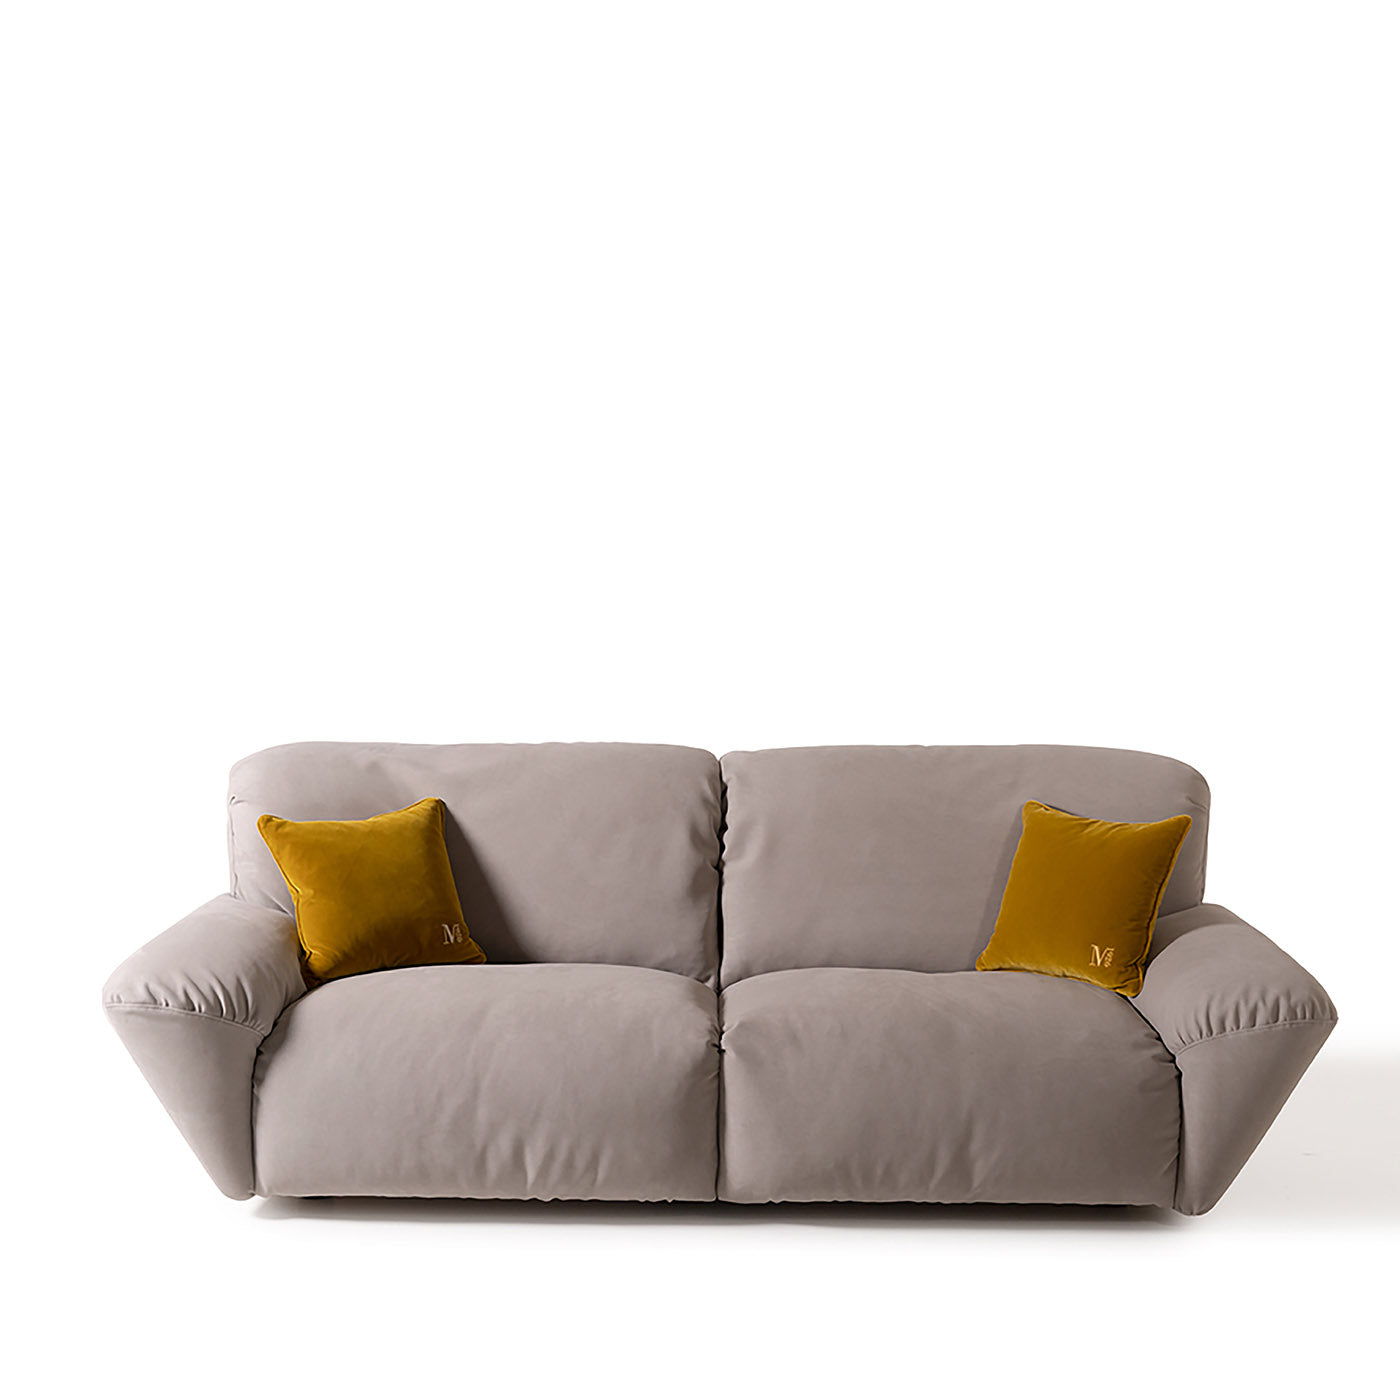 Beluga 2-sitziges midi-sofa von Marco und Giulio Mantellassi - Alternative Ansicht 1